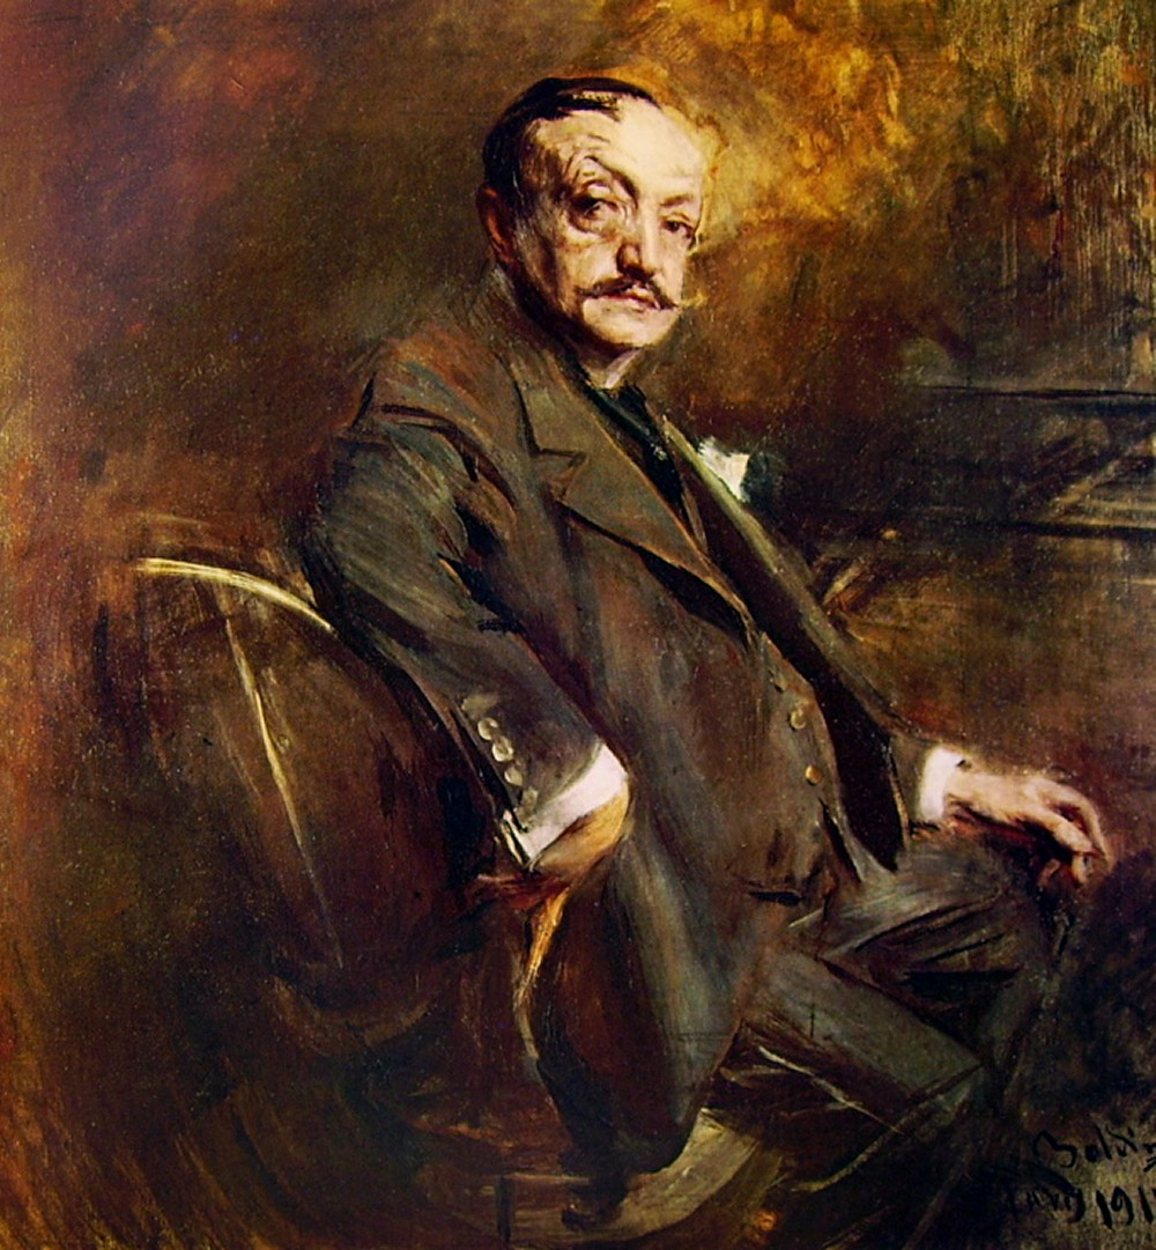 Giovanni Boldini - December 31, 1842 - July 11, 1931